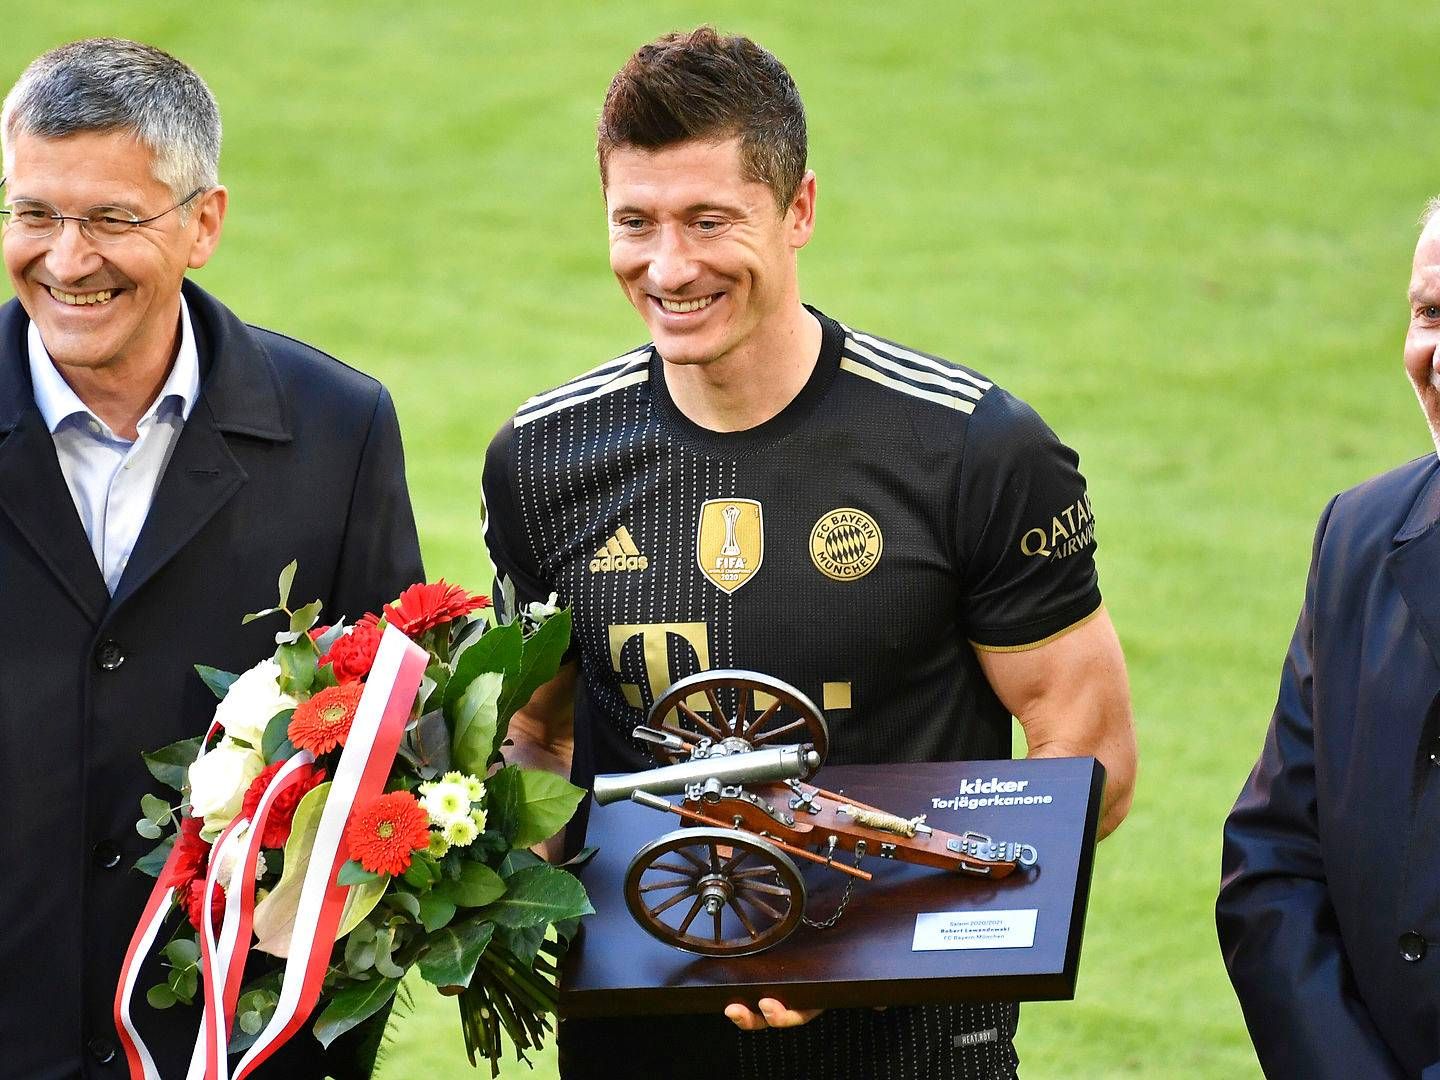 Nent håber, at Polens største fodboldstjerne, Robert Lewandowski, der sidste sæson blev Bundesligaens mest scorende og hjalp Bayern München med at vinde ligaen bliver et trækplaster for Viaplay. | Foto: Frank Hoermann/AP/Ritzau Scanpix